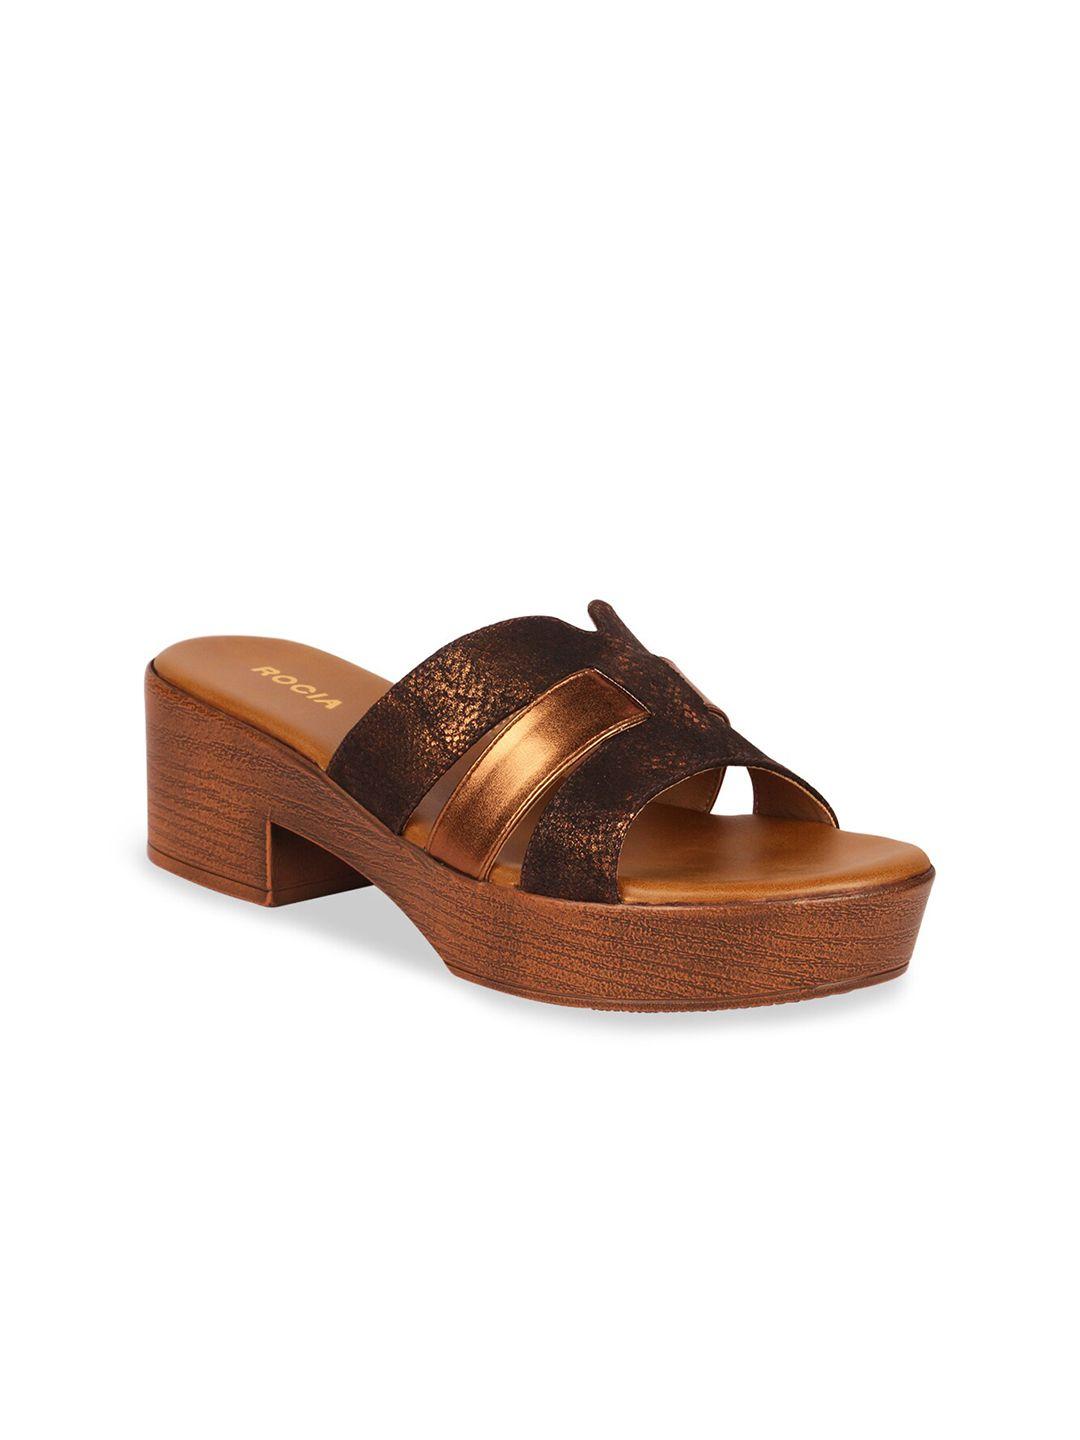 rocia-bronze-toned-block-sandals